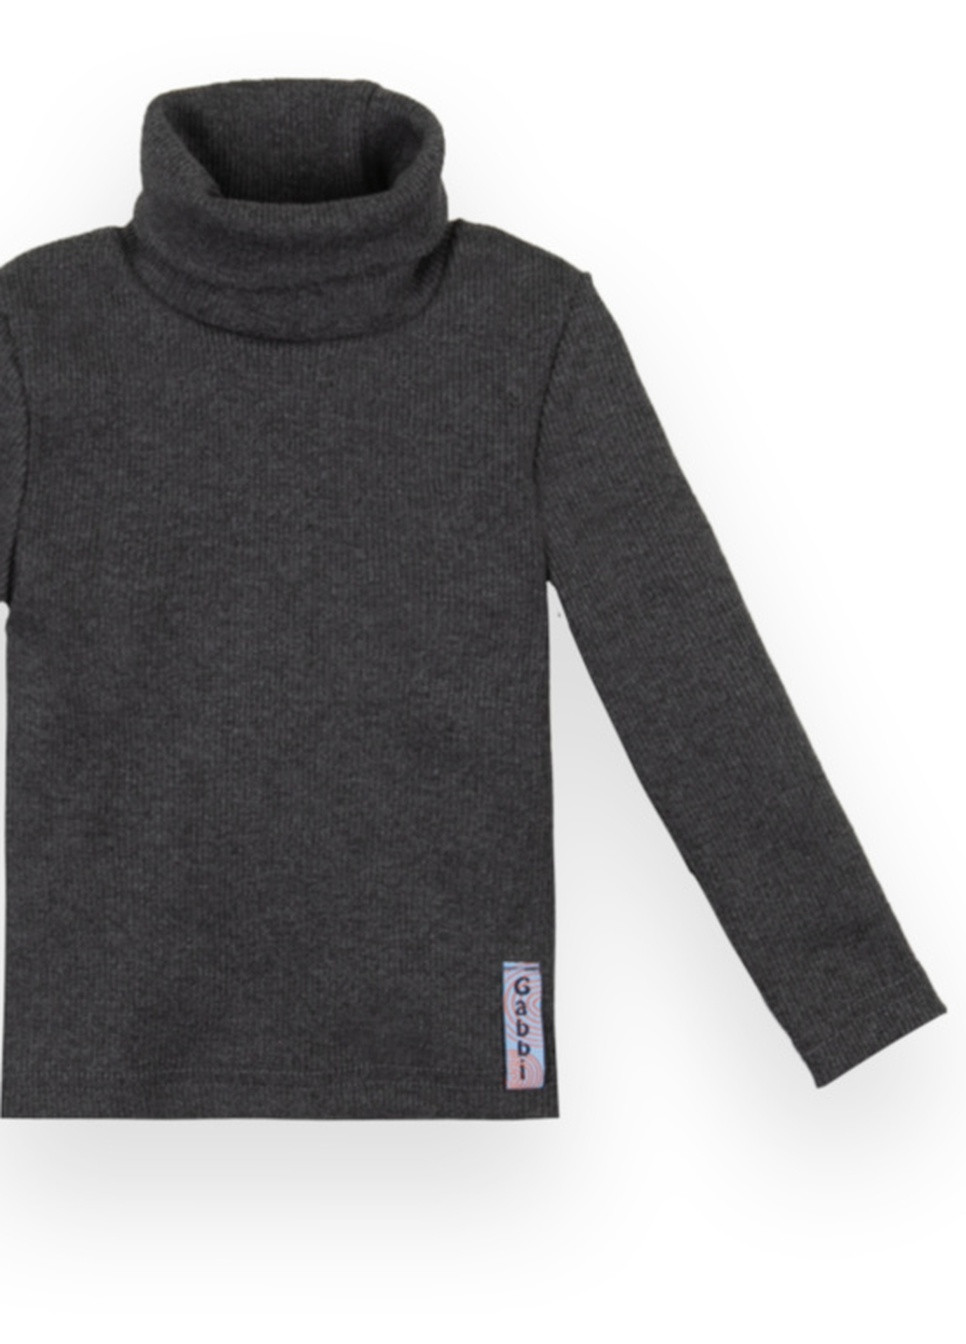 Черный демисезонный детский свитер sv-21-10-1 *стиль* Габби